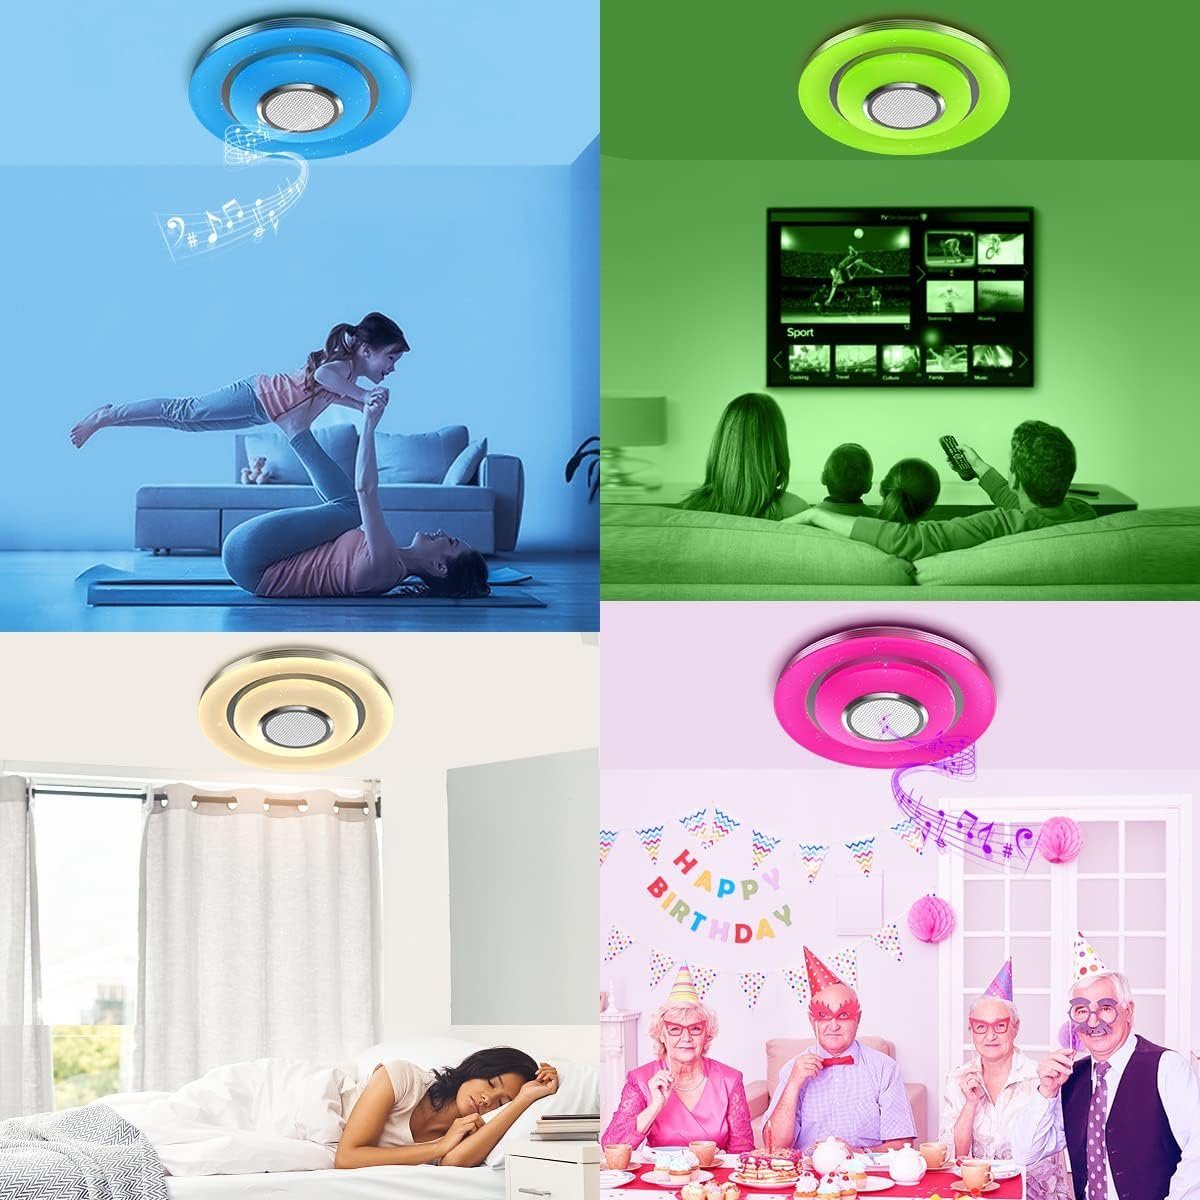 Klangqualität Deckenleuchte Mehrere Lautsprecher, RGB, Fernbedienung,36W, LED mit LED Deckenleuchte Bluetooth Hohe Farben, DOPWii